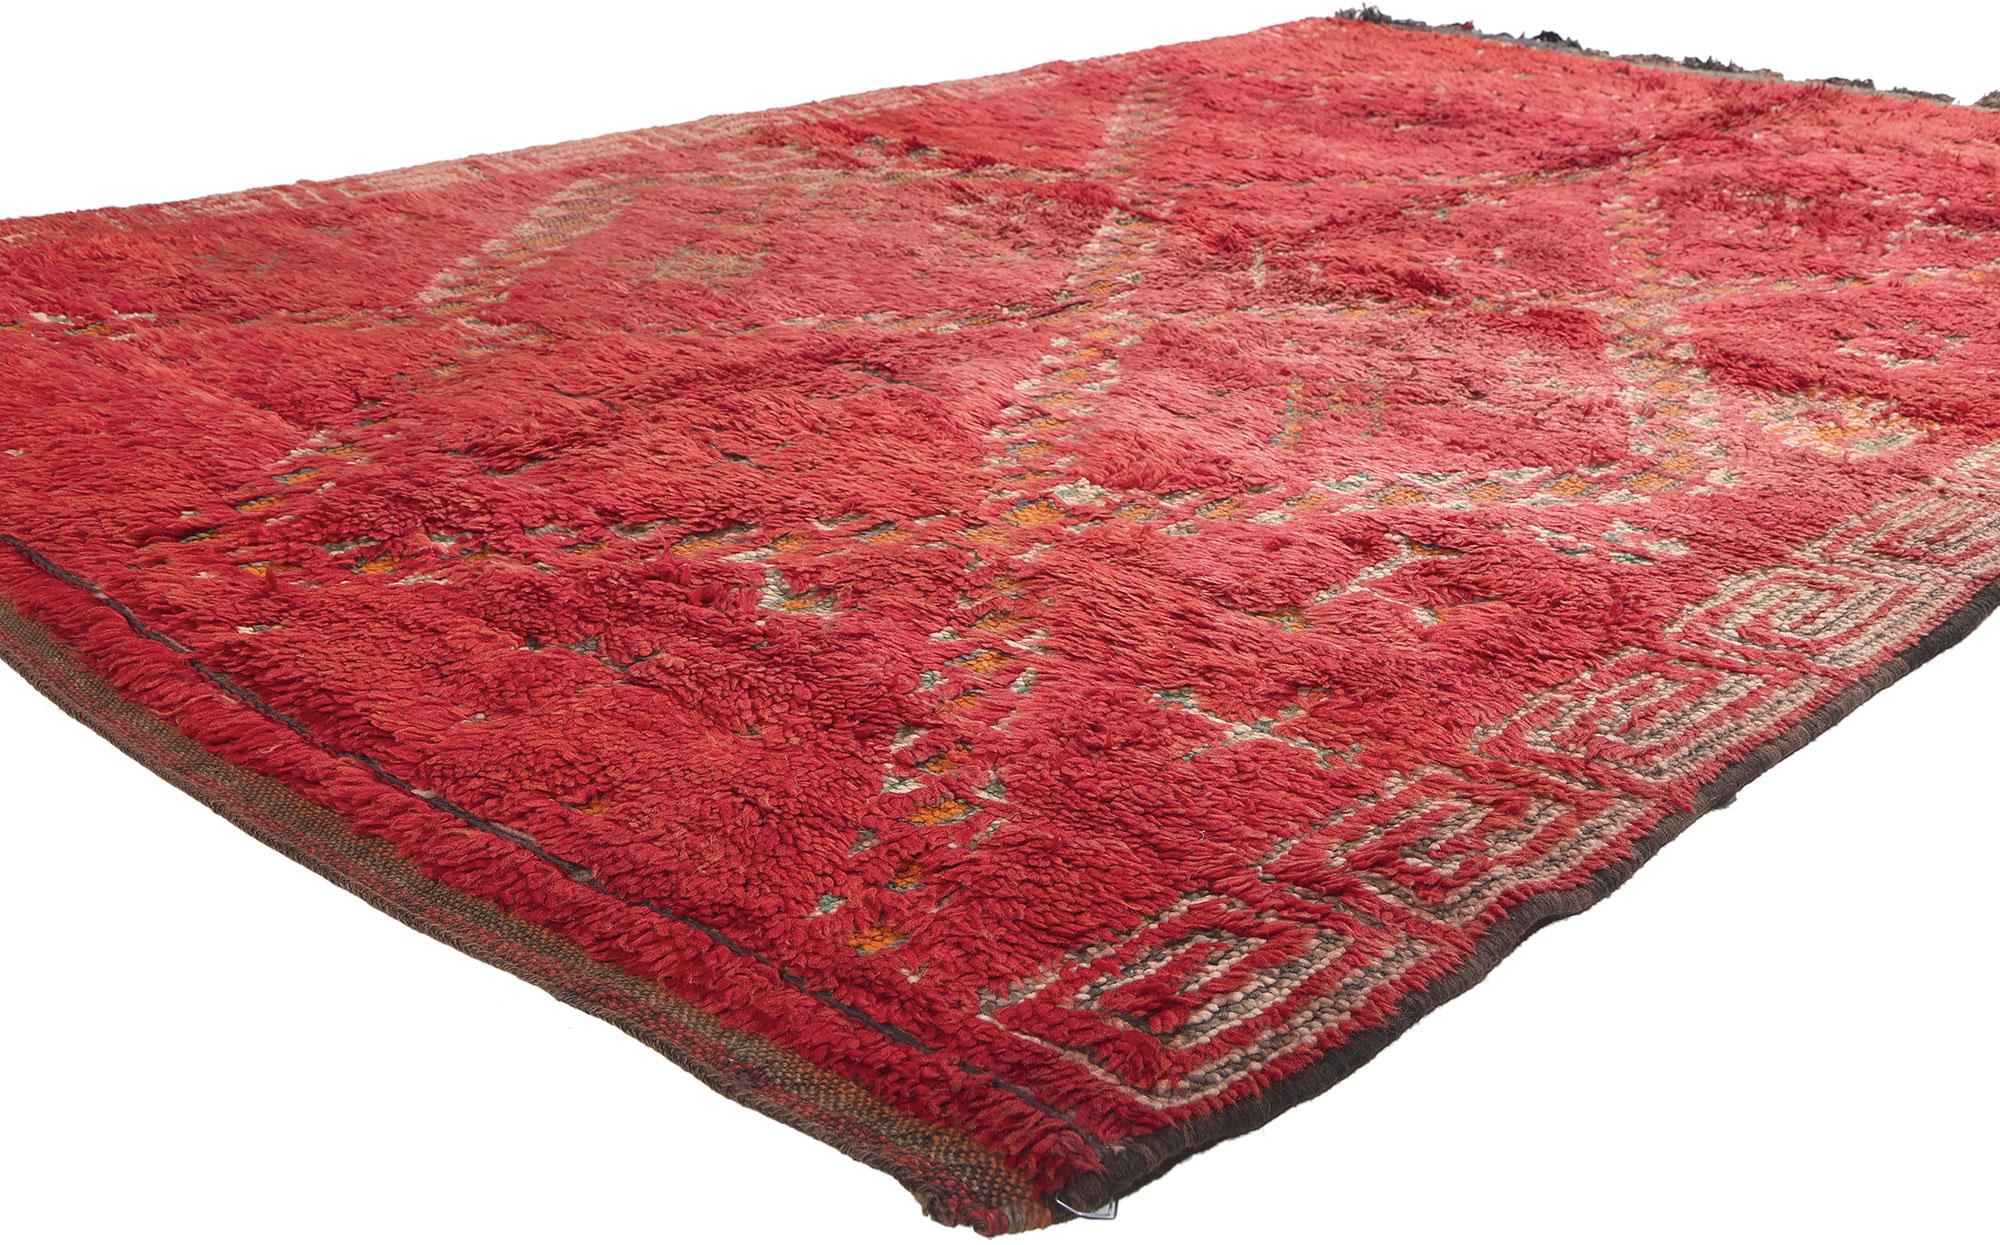 20153 Vintage Rot Beni MGuild Marokkanischer Teppich, 05'09 x 08'04. Dieser handgeknüpfte marokkanische Teppich aus Wolle im Vintage-Stil von Beni MGuild ist eine Verschmelzung von kühner Bohème-Ästhetik und modernem Midcentury-Stil. Das